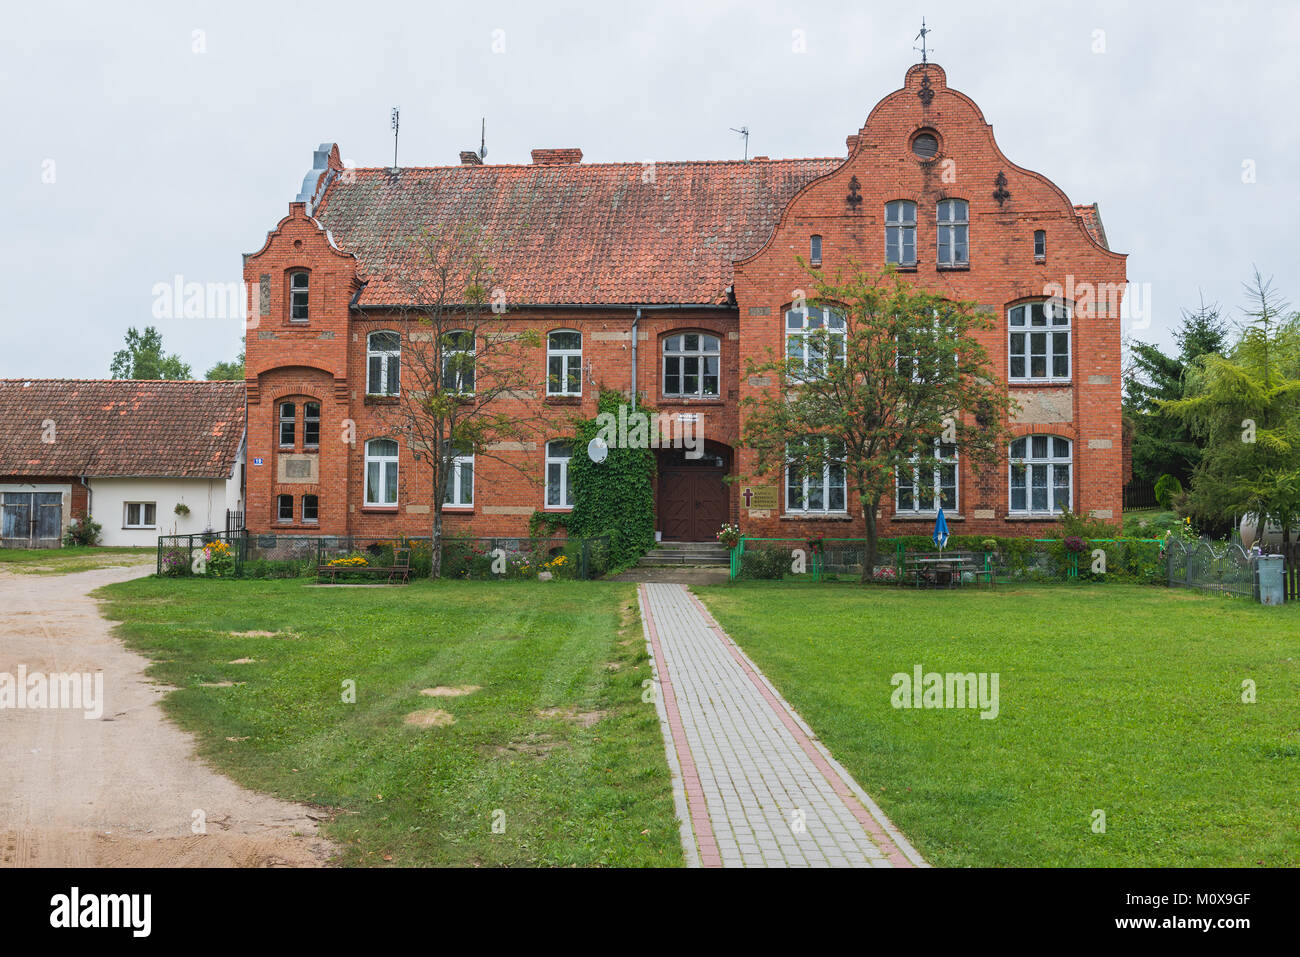 Ancien bâtiment de l'école du début du 20ème siècle dans village, Saplaty Warmian-Masurian Voïvodie de Pologne Banque D'Images